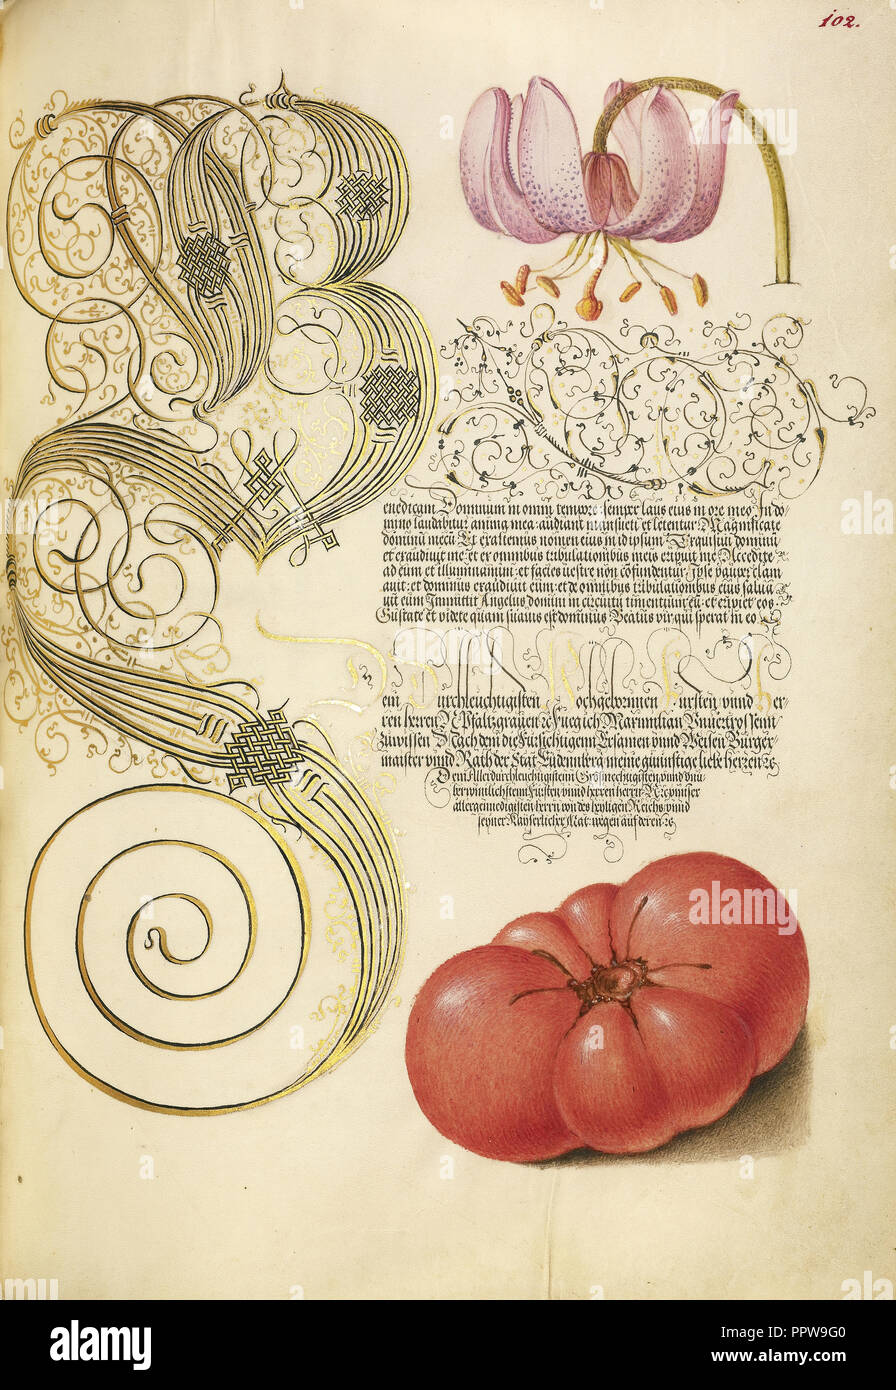 Martagon Lily y tomate; Joris Hoefnagel, Flamenco , Húngaro, 1542 - 1600, y Georg Bocskay, Húngaro, murió 1575, Viena Foto de stock